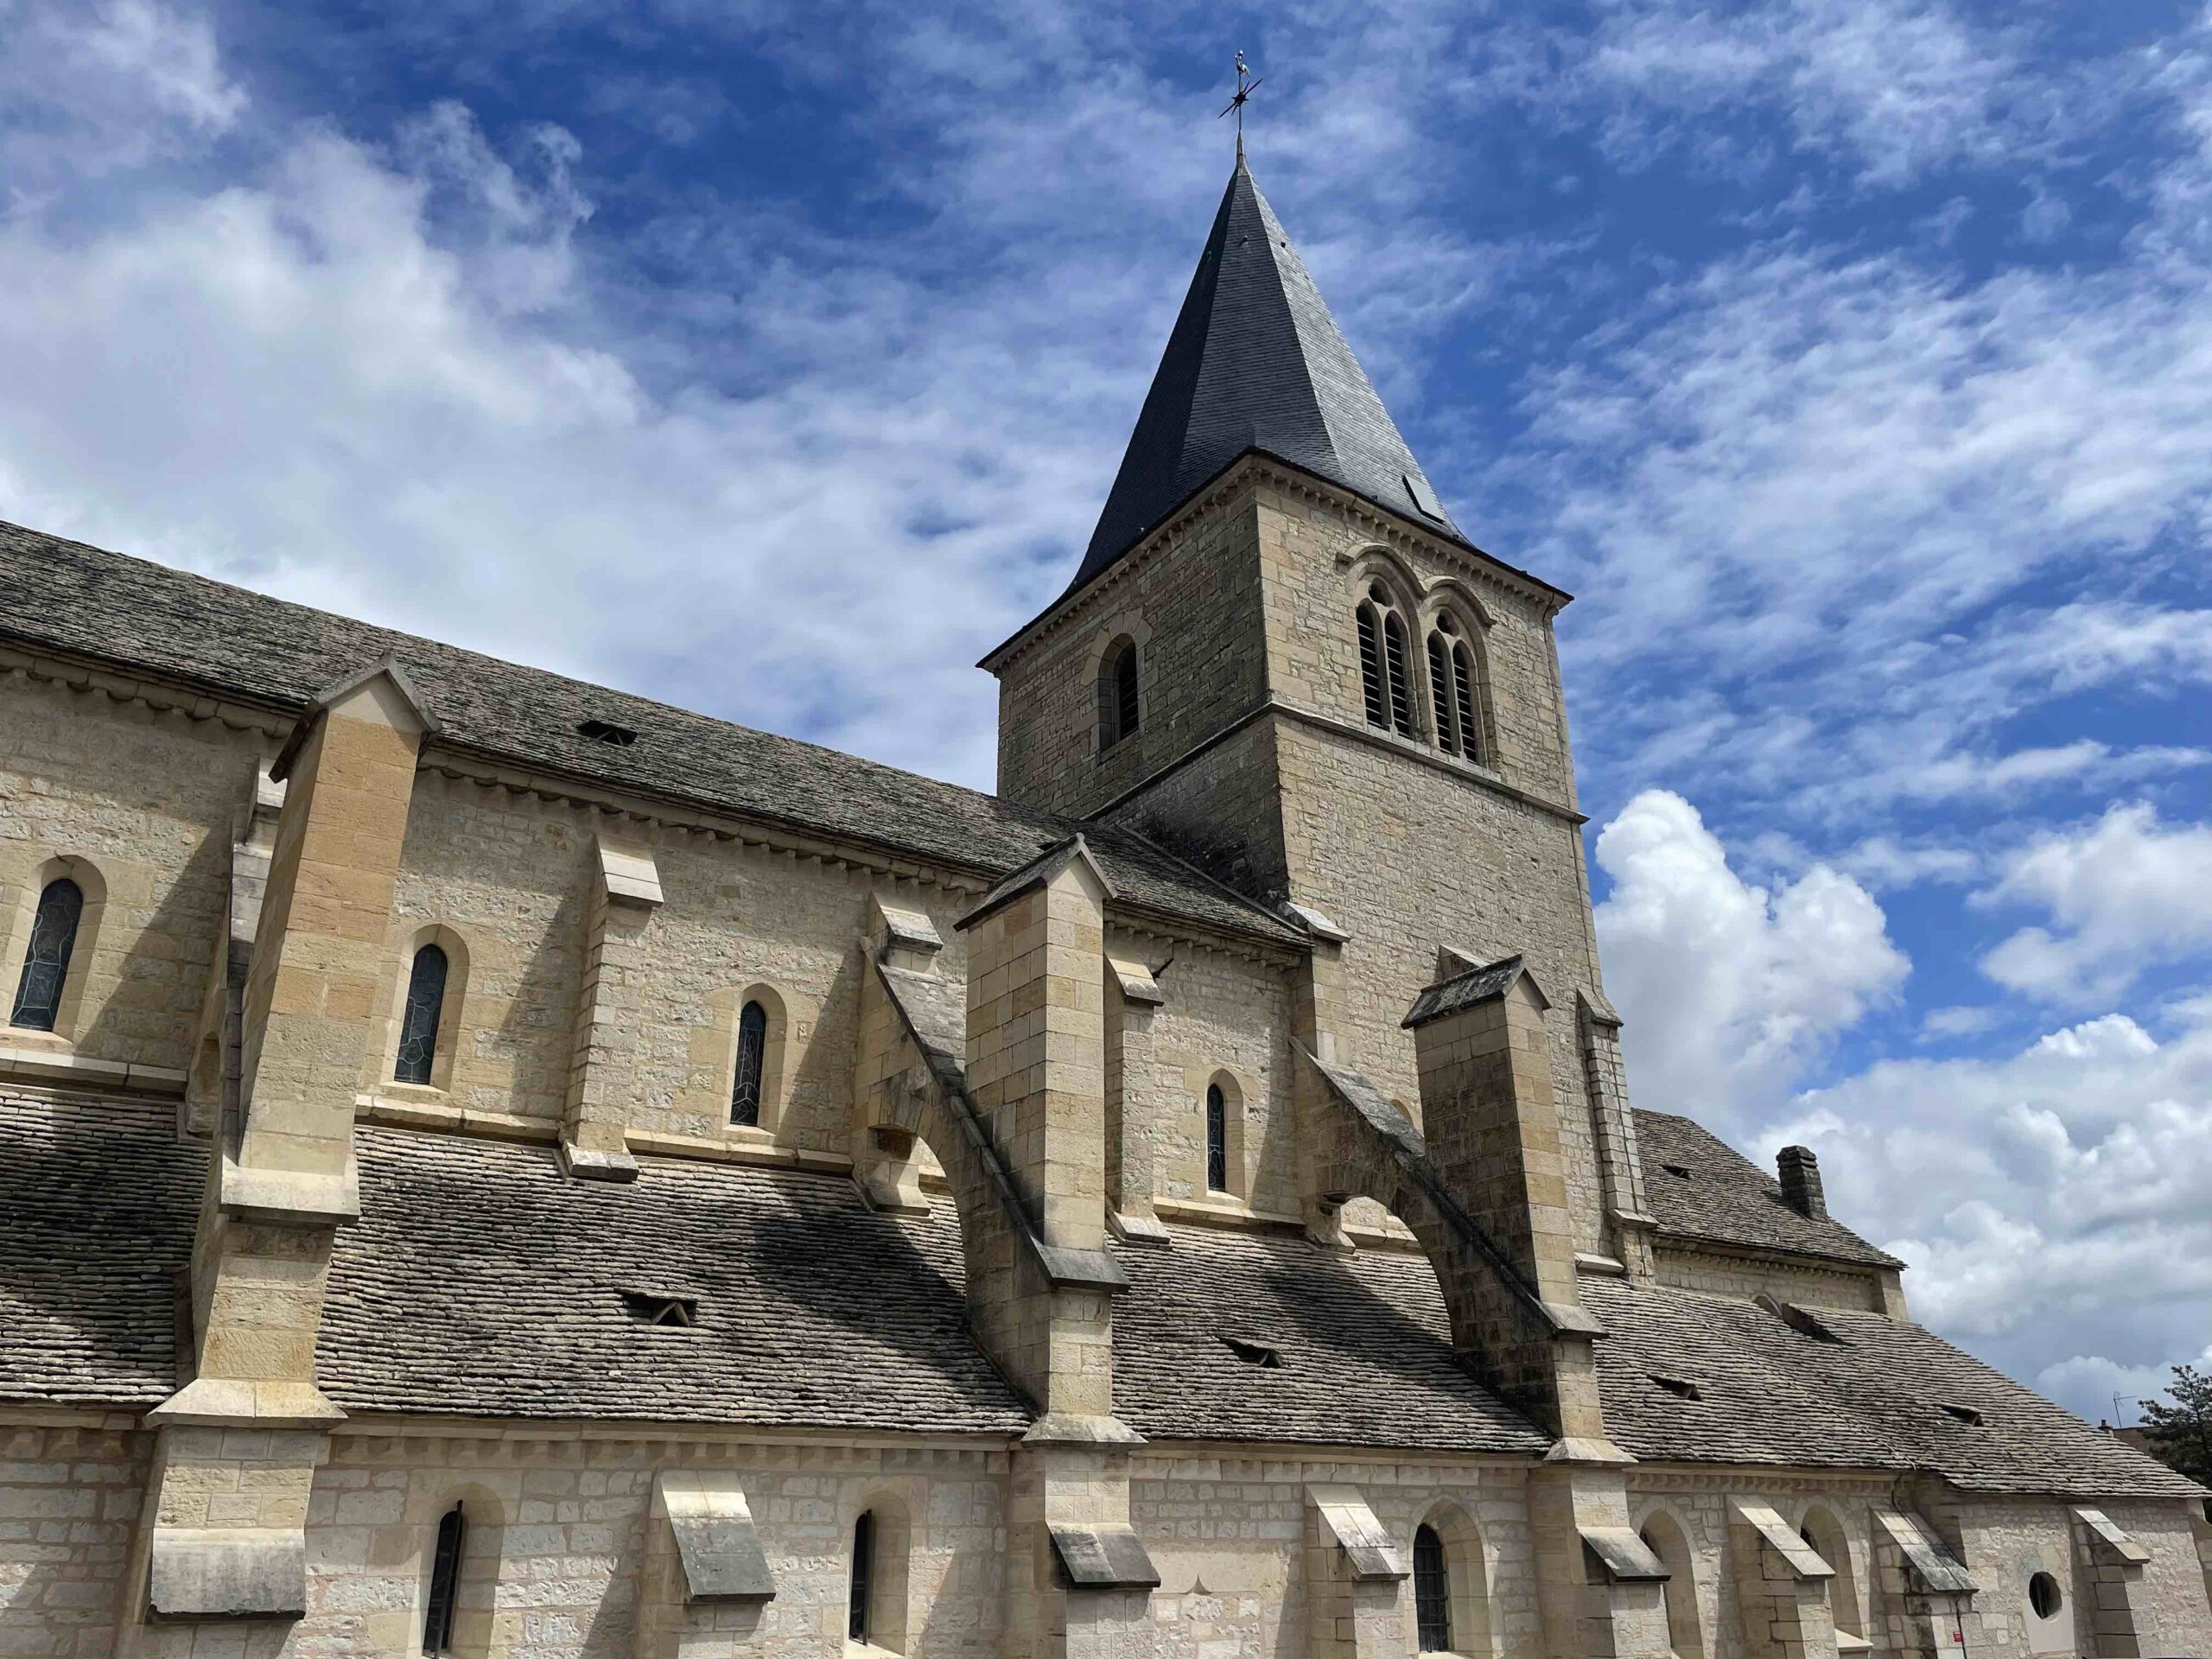  Flâneries dijonnaises- 1ère partie/aufildeslieux.fr/ Église Notre-Dame-de-Talant © K.HIBBS